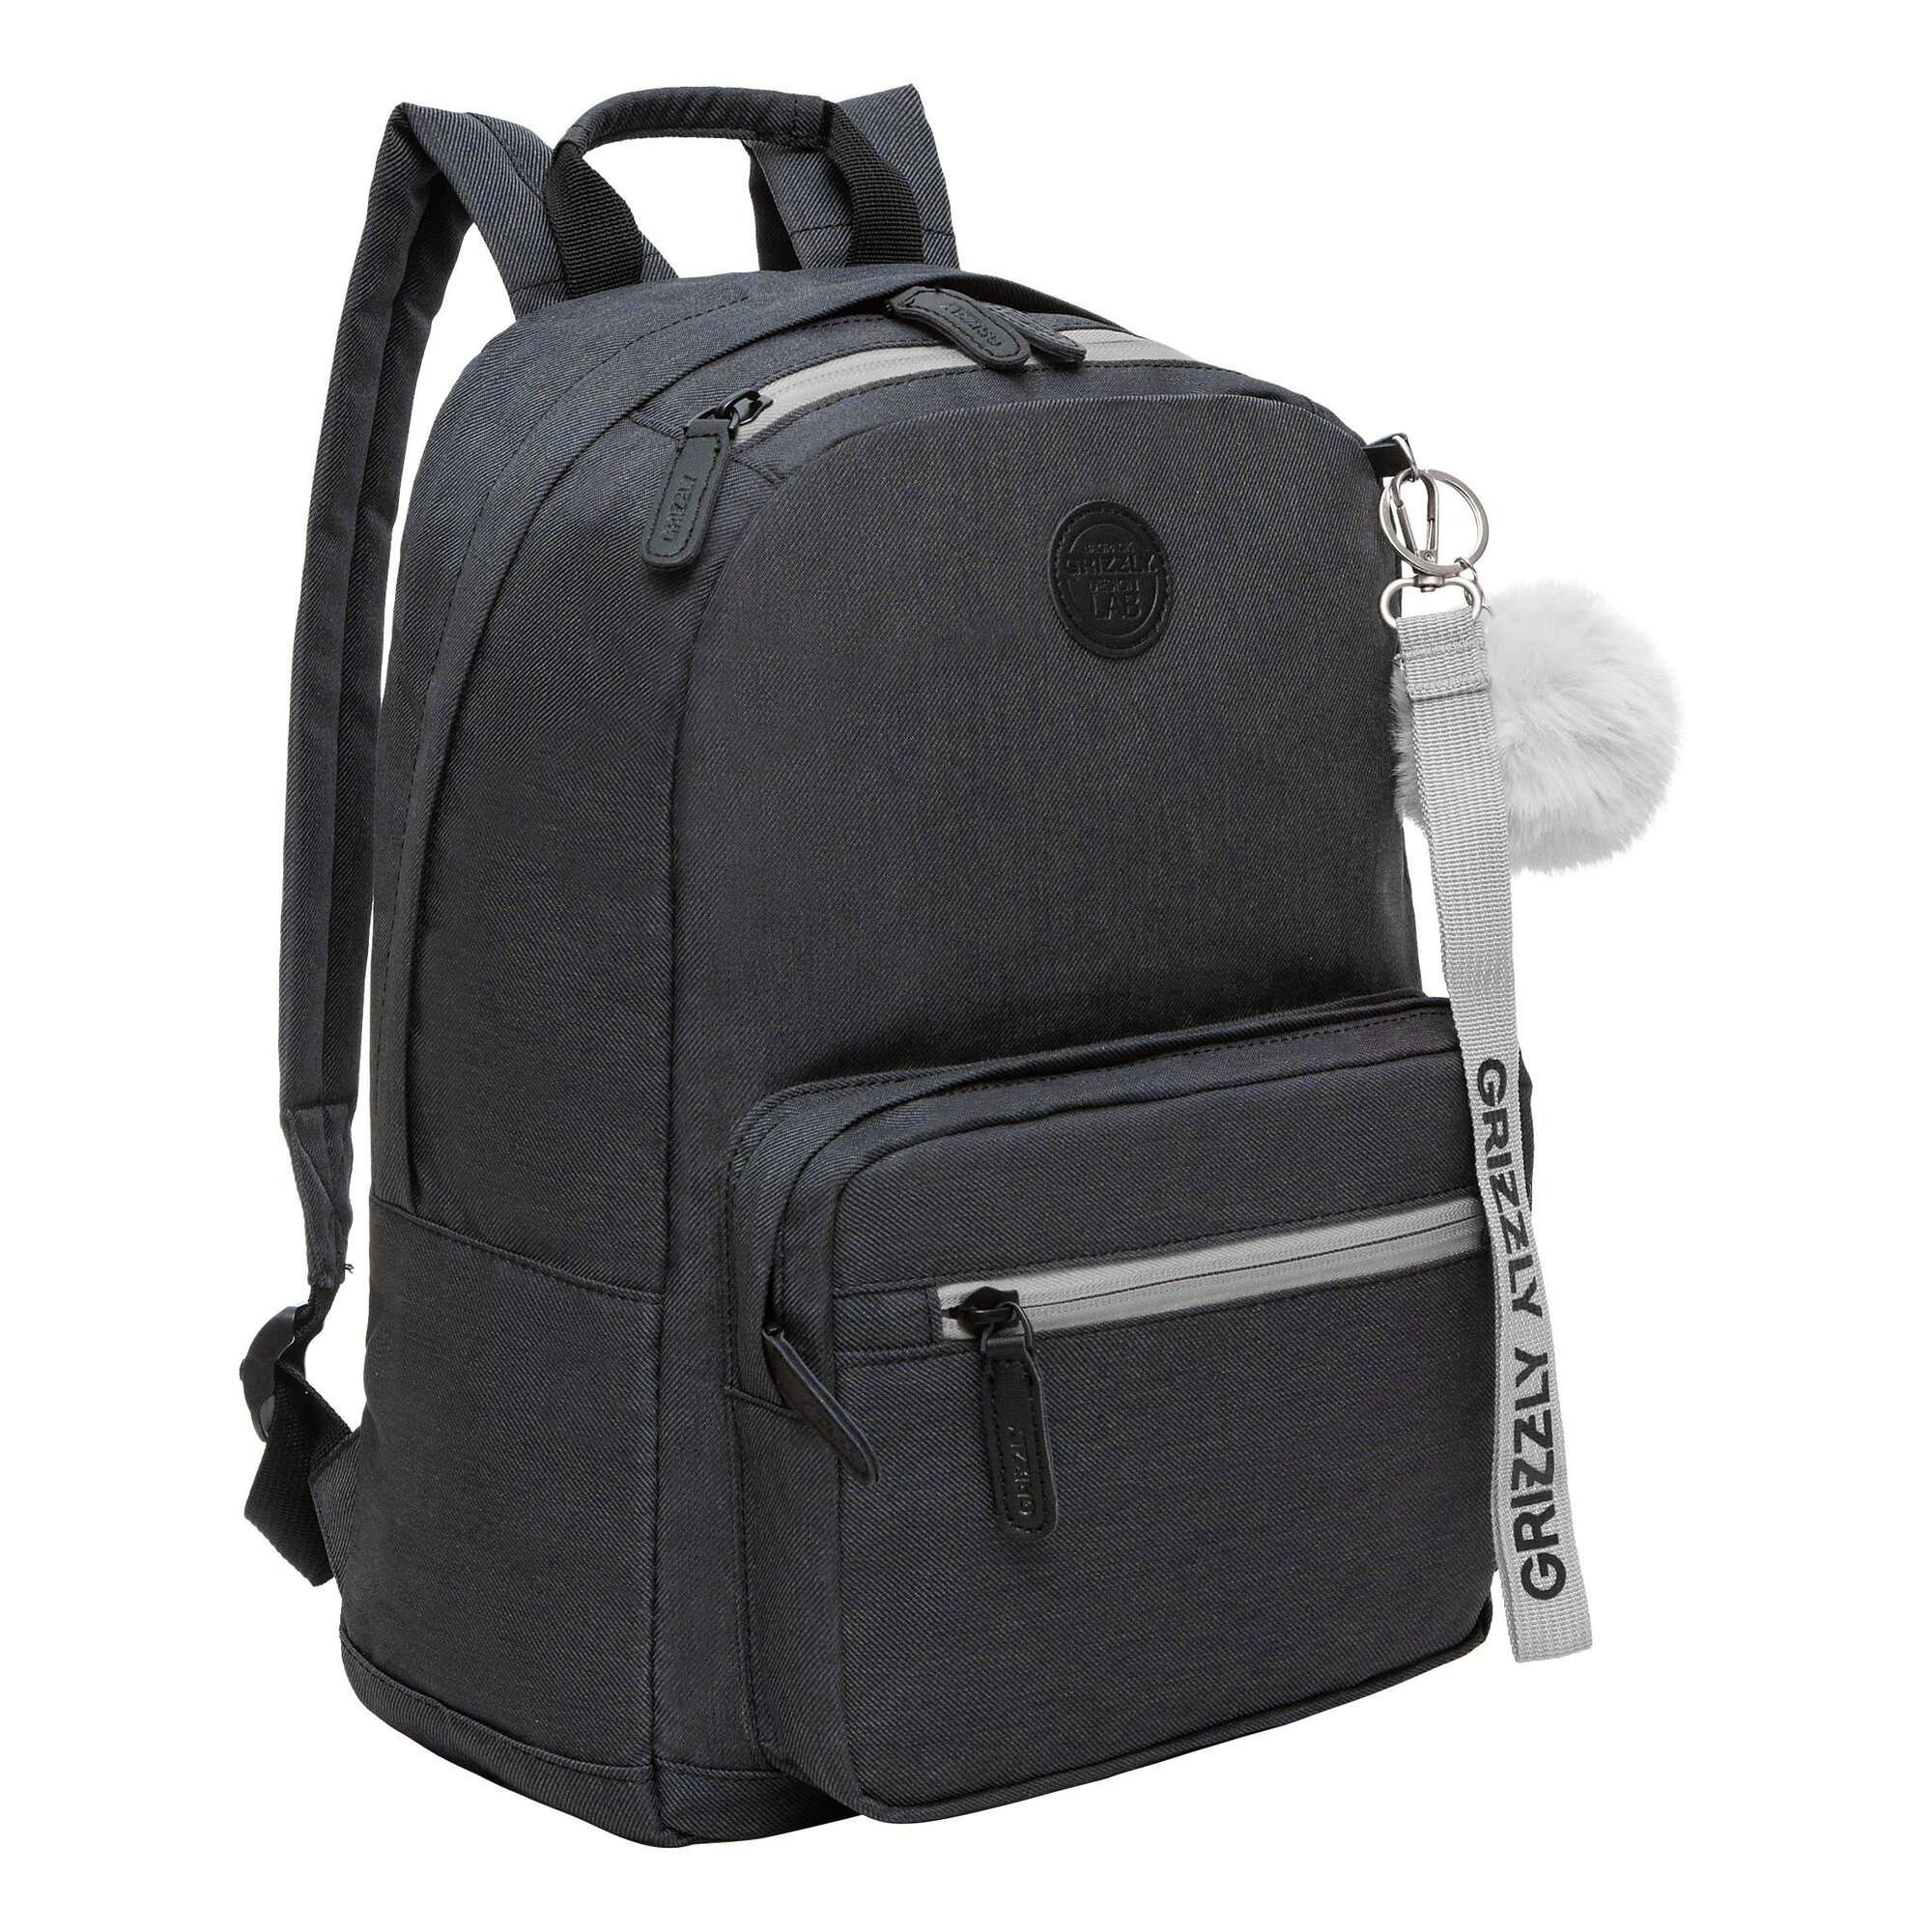 Легкий рюкзак GRIZZLY городской с карманом для ноутбука 13", одним отделением, женский RXL-321-1/7